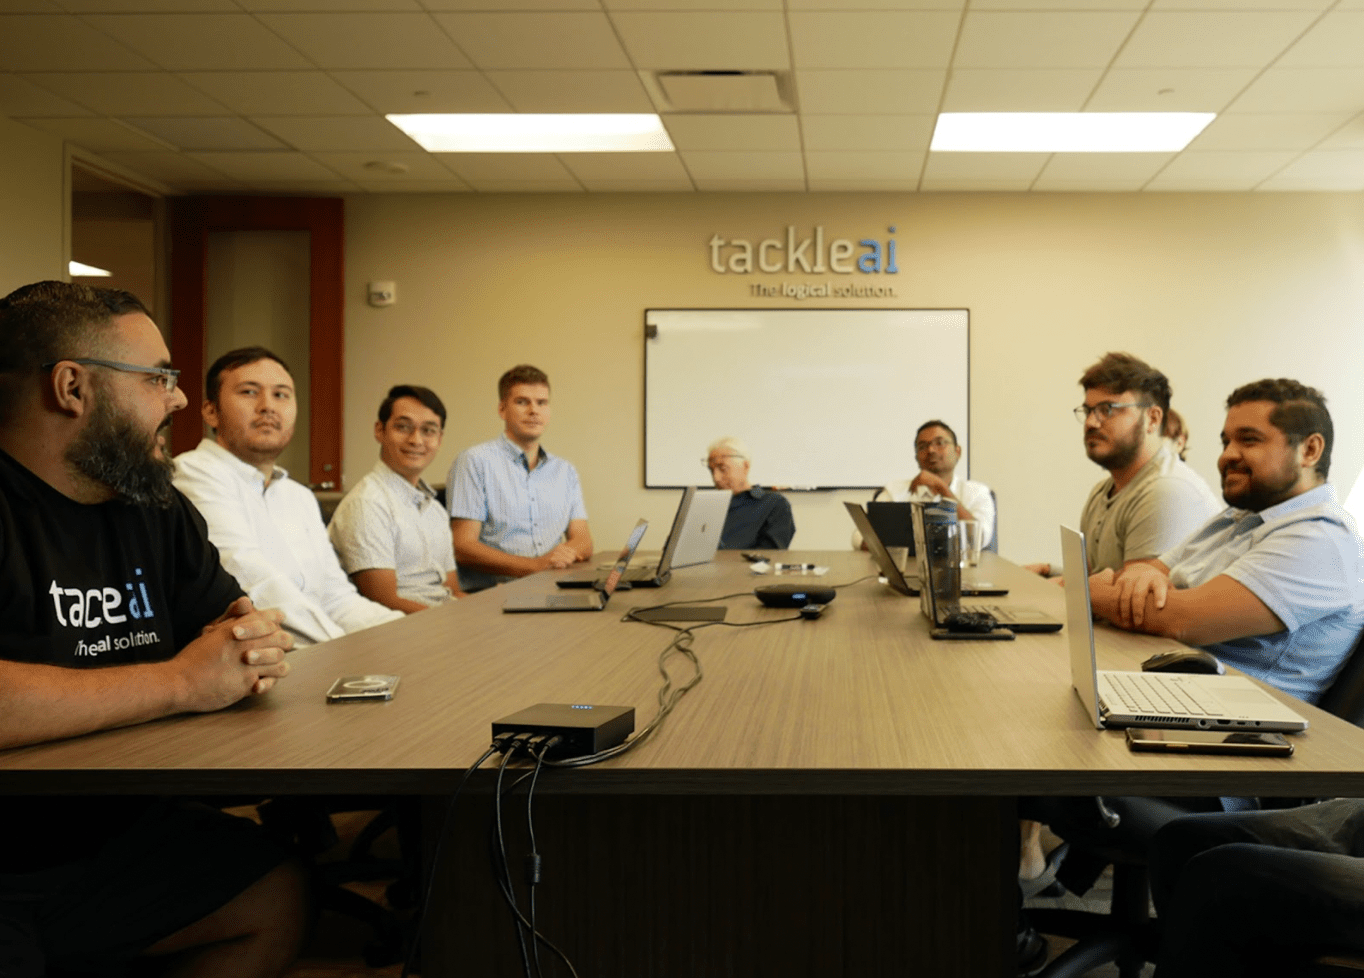 O CEO da TackleAI, Sergio Suarez, se encontra com sua equipe em uma sala de reuniões